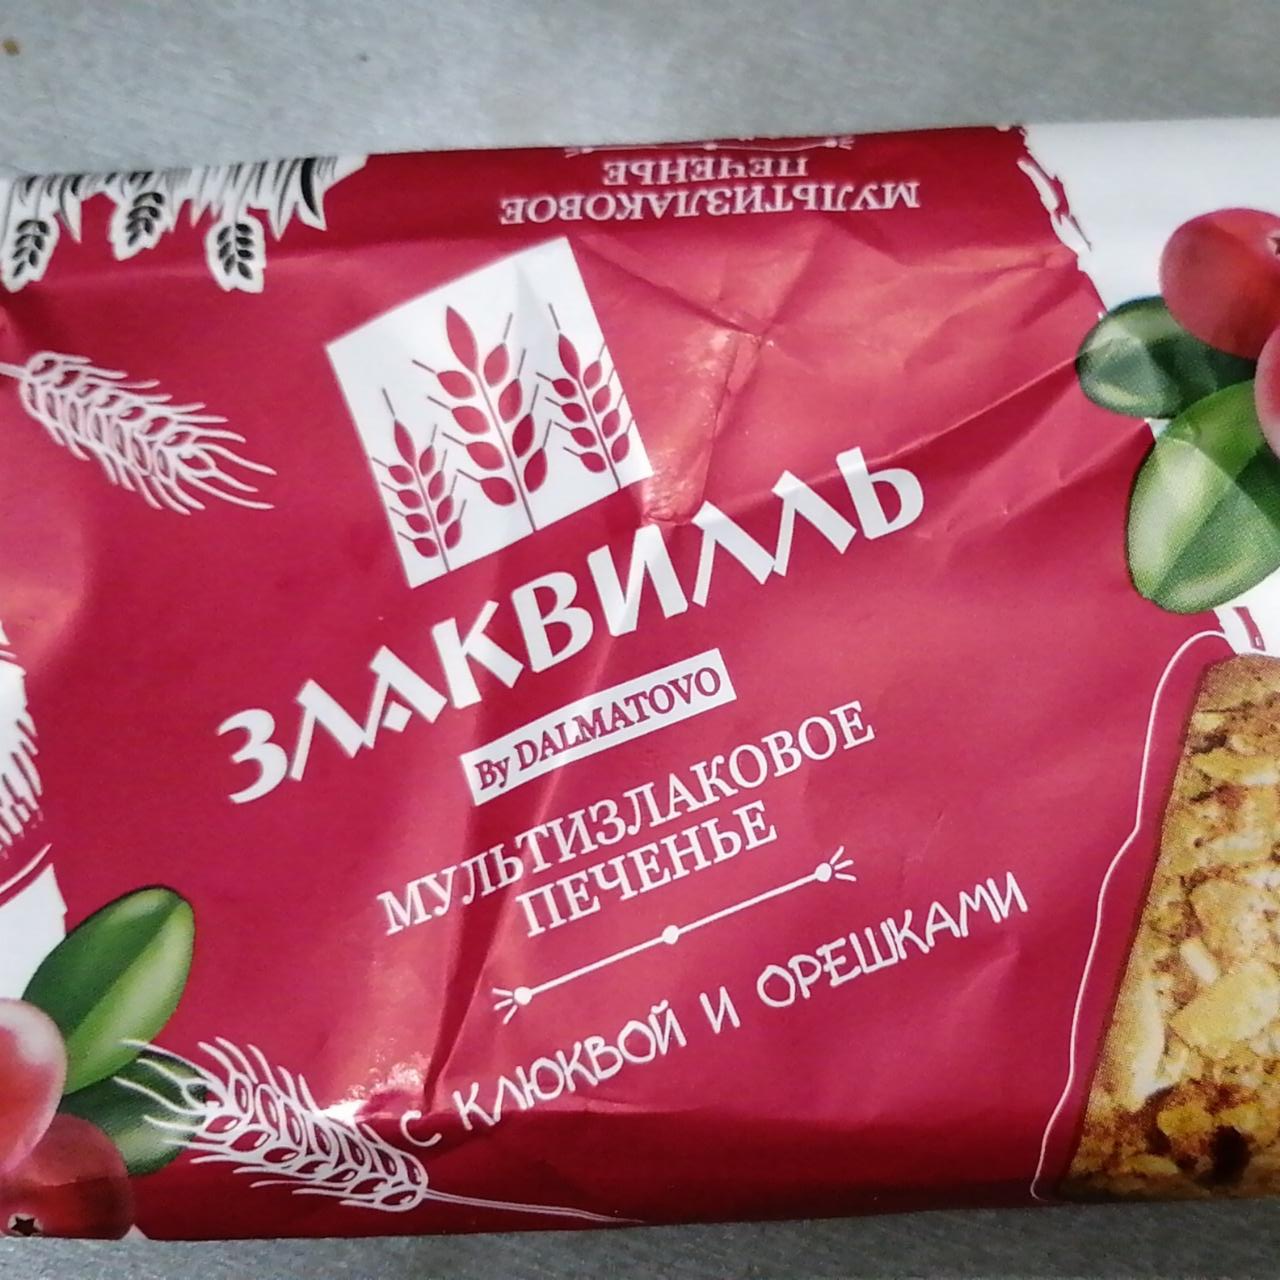 Фото - Мультизлаковое печенье Злаквилль Dalmatovo